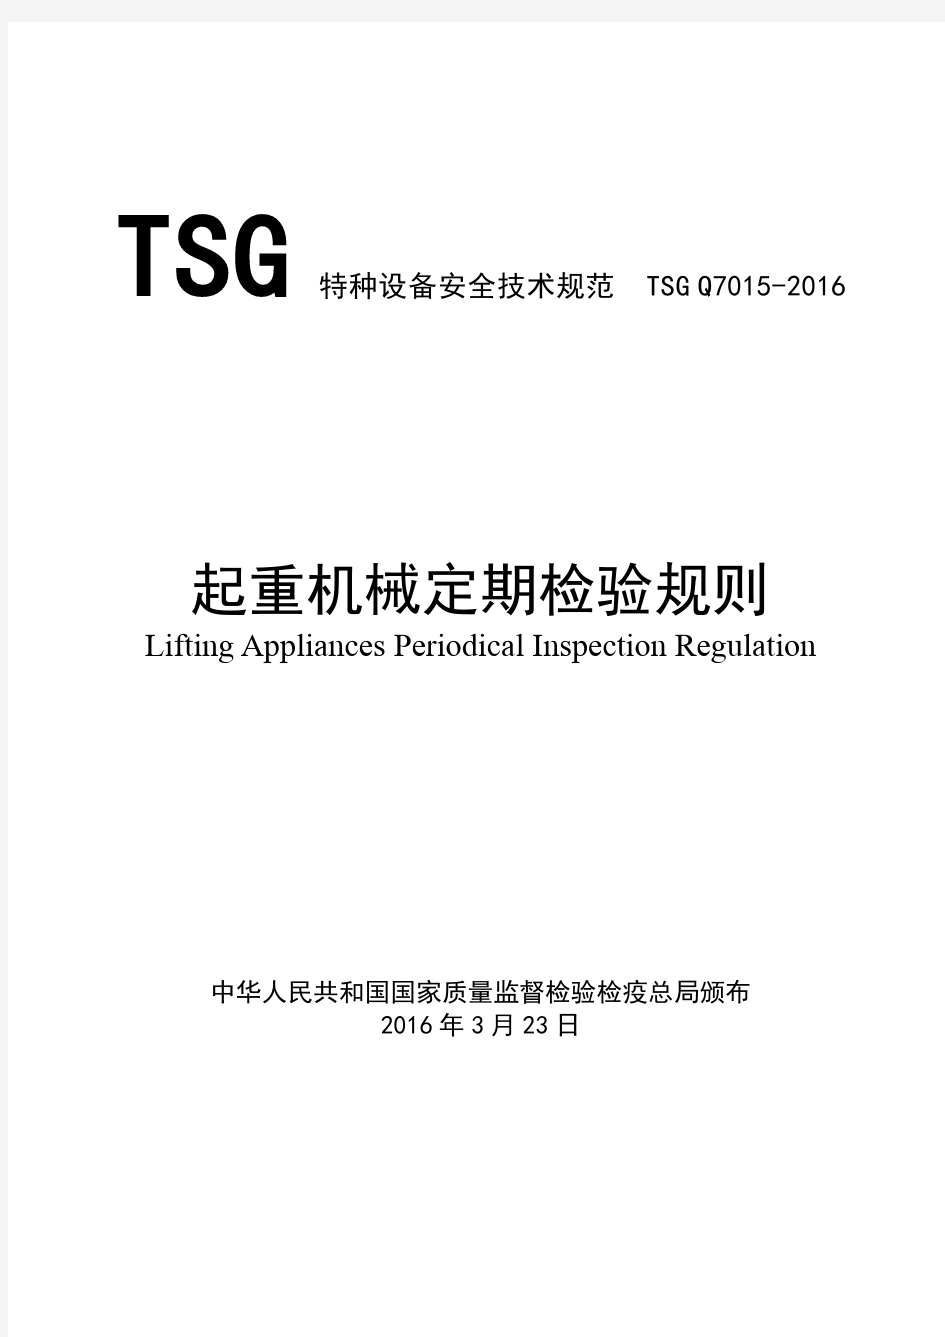 起重机械定期检验规则(TSG Q7015-2016)